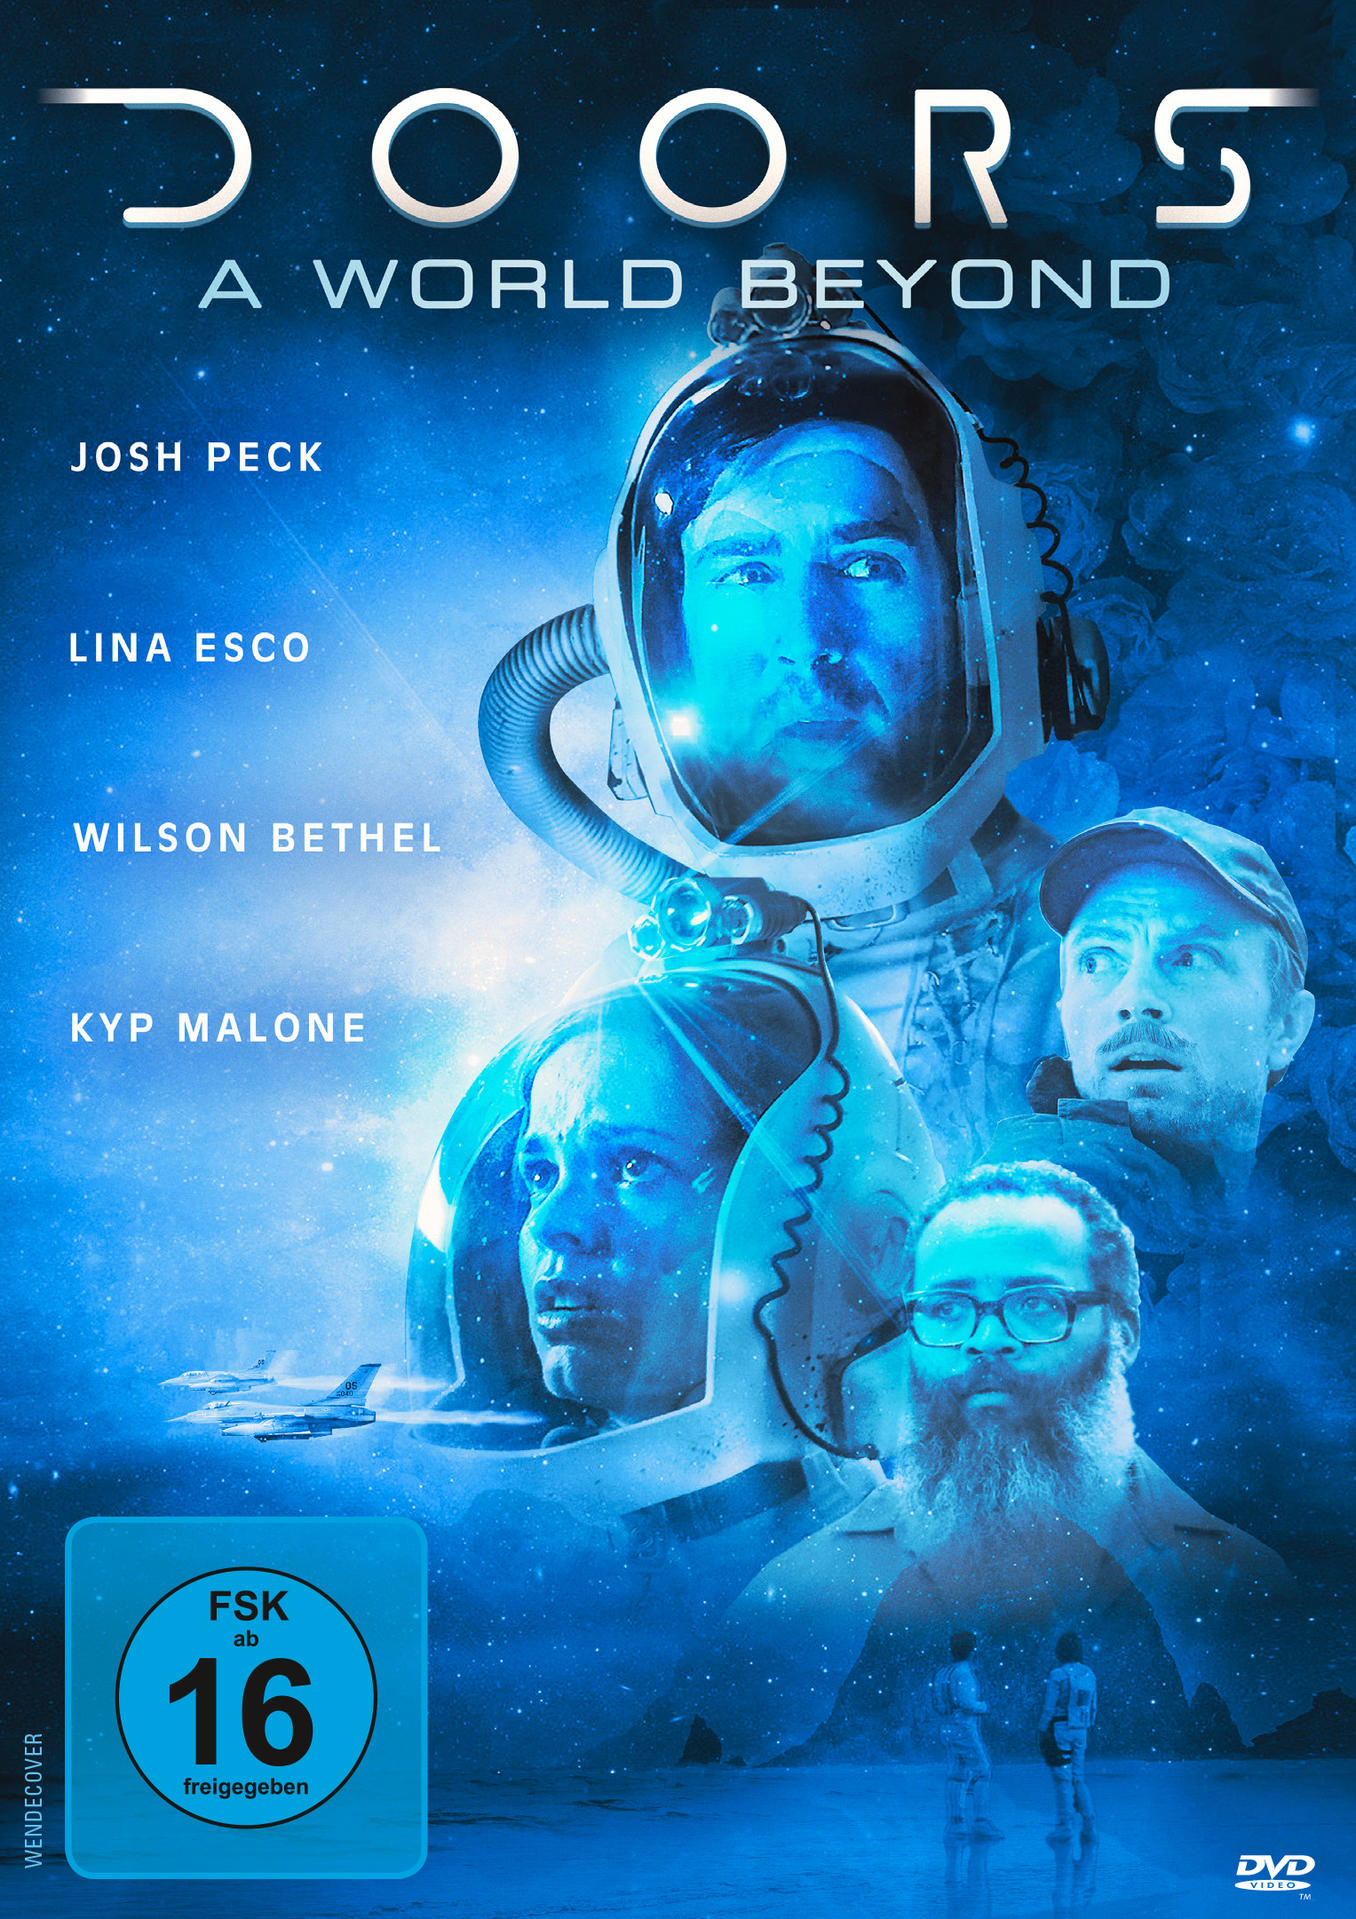 World Beyond DVD A - Doors